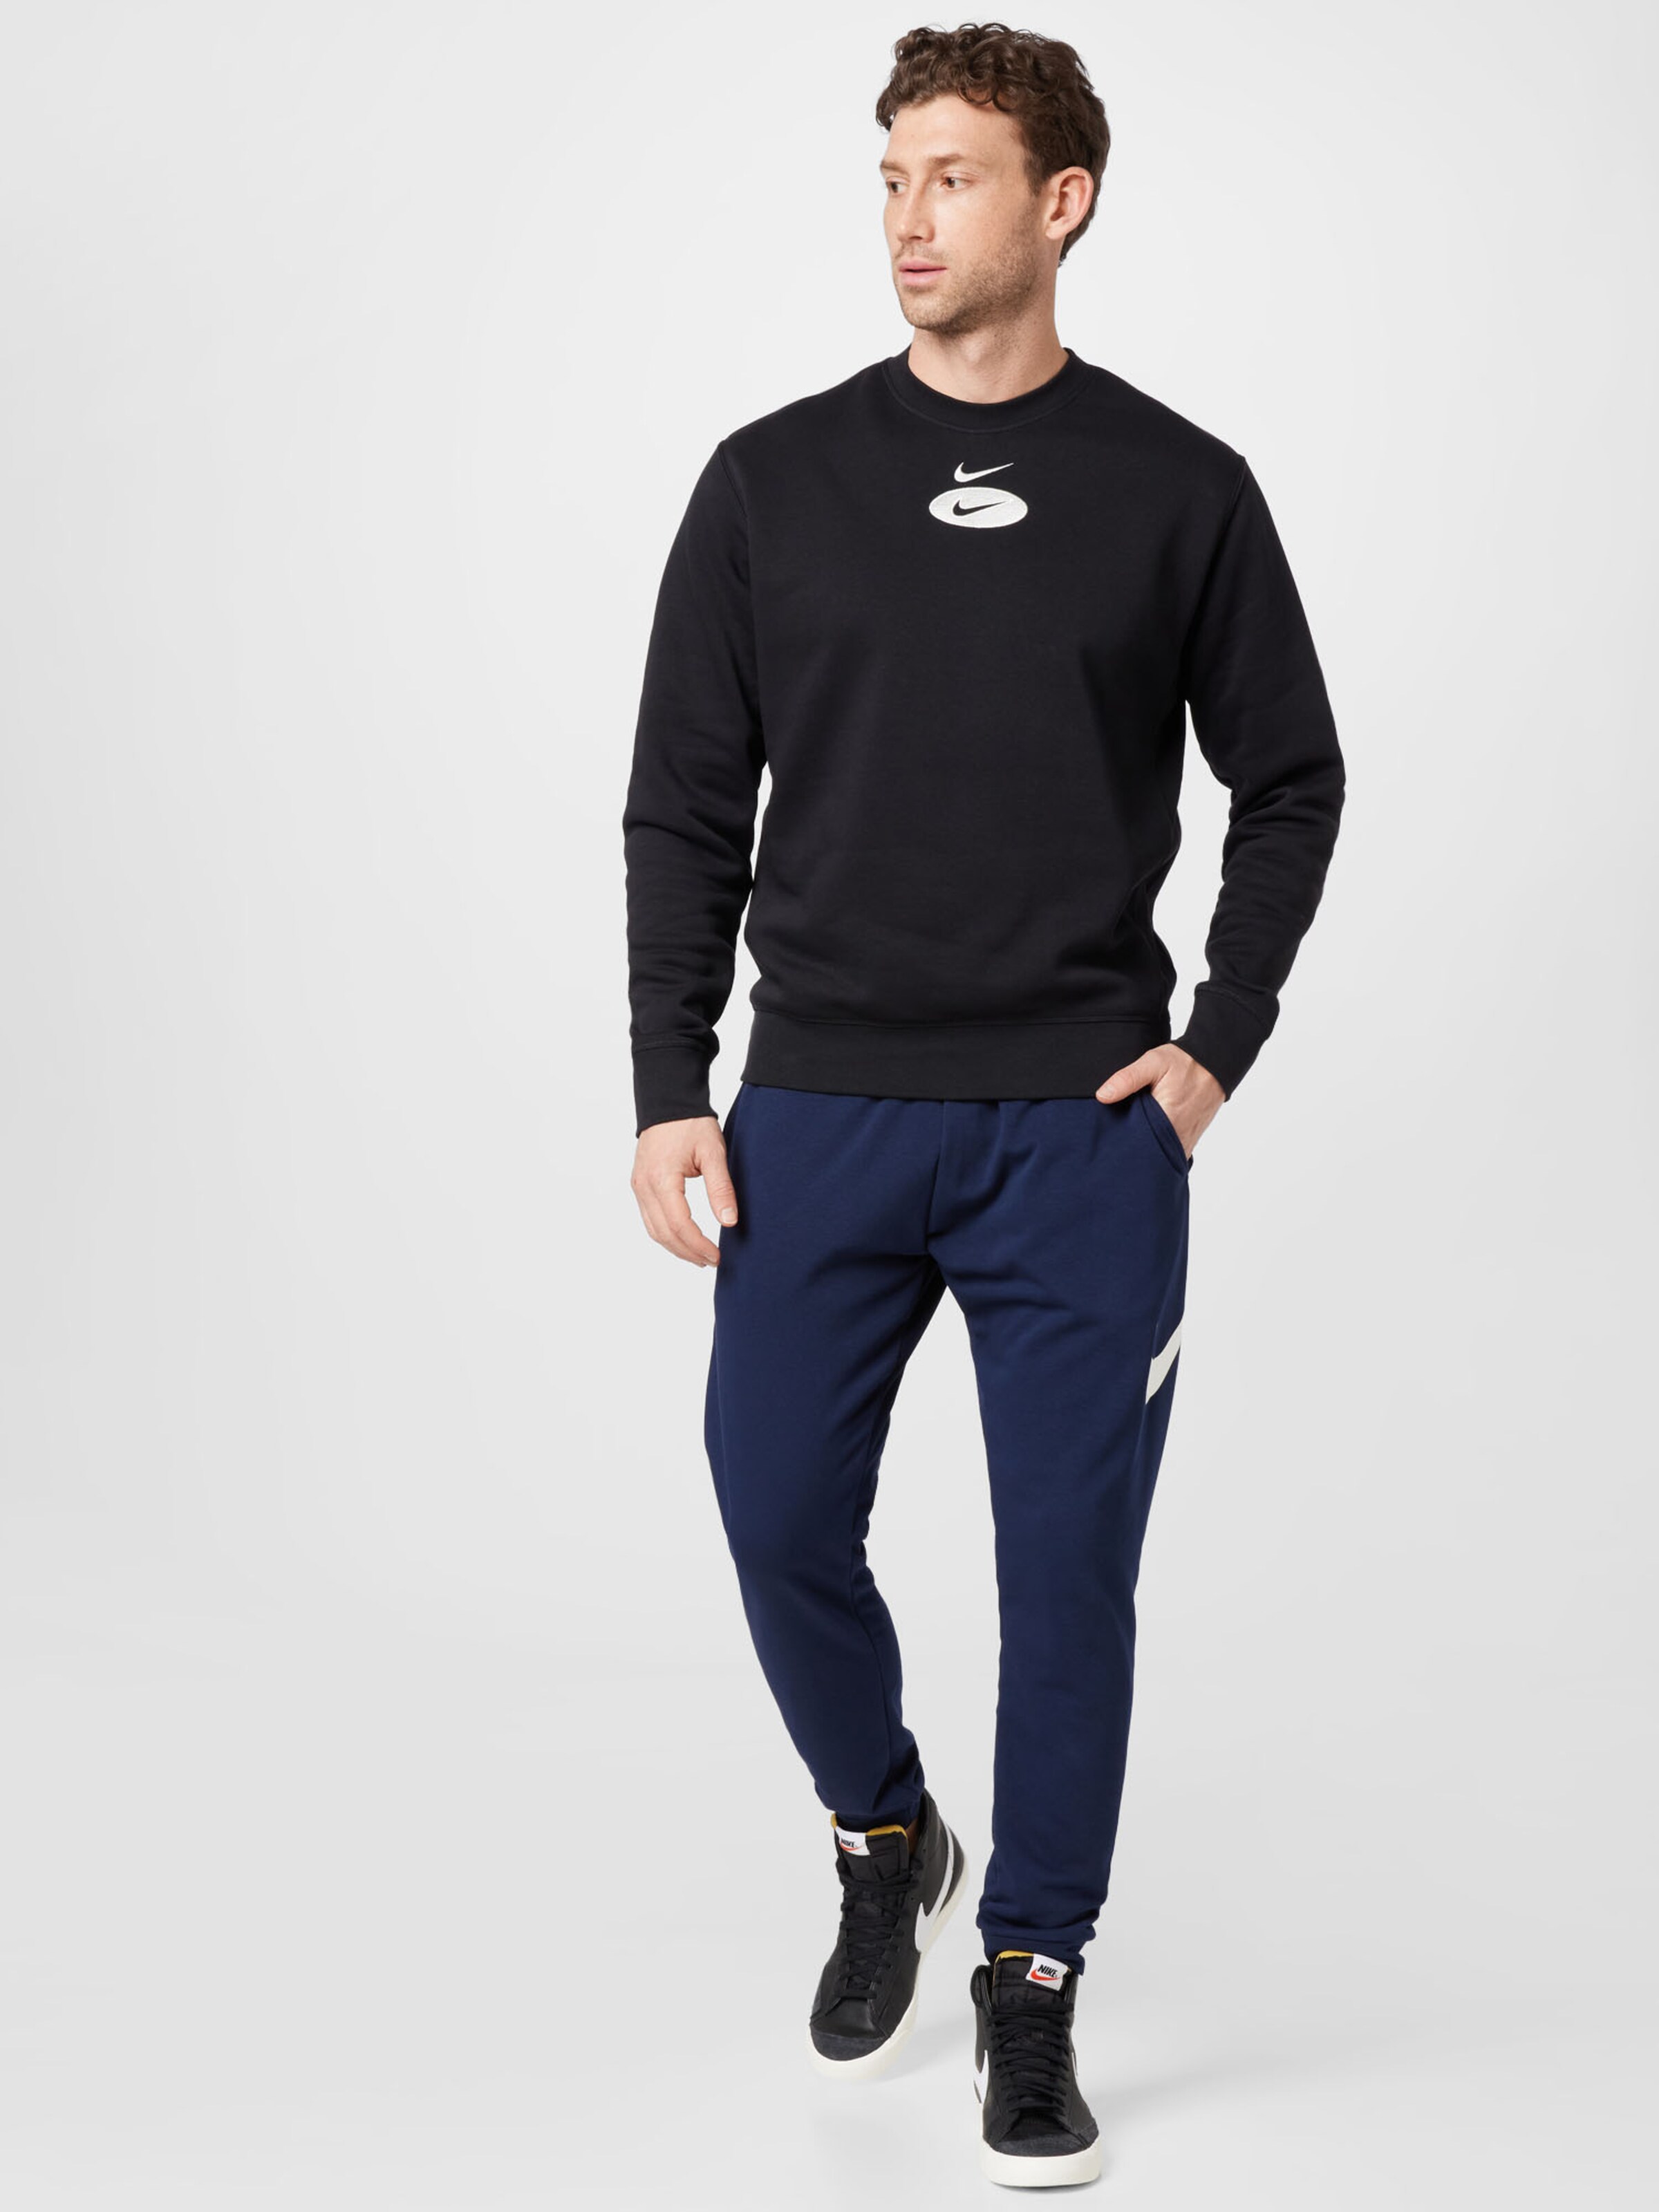 Männer Sweat Nike Sportswear Sweatshirt in Schwarz - ZS95269